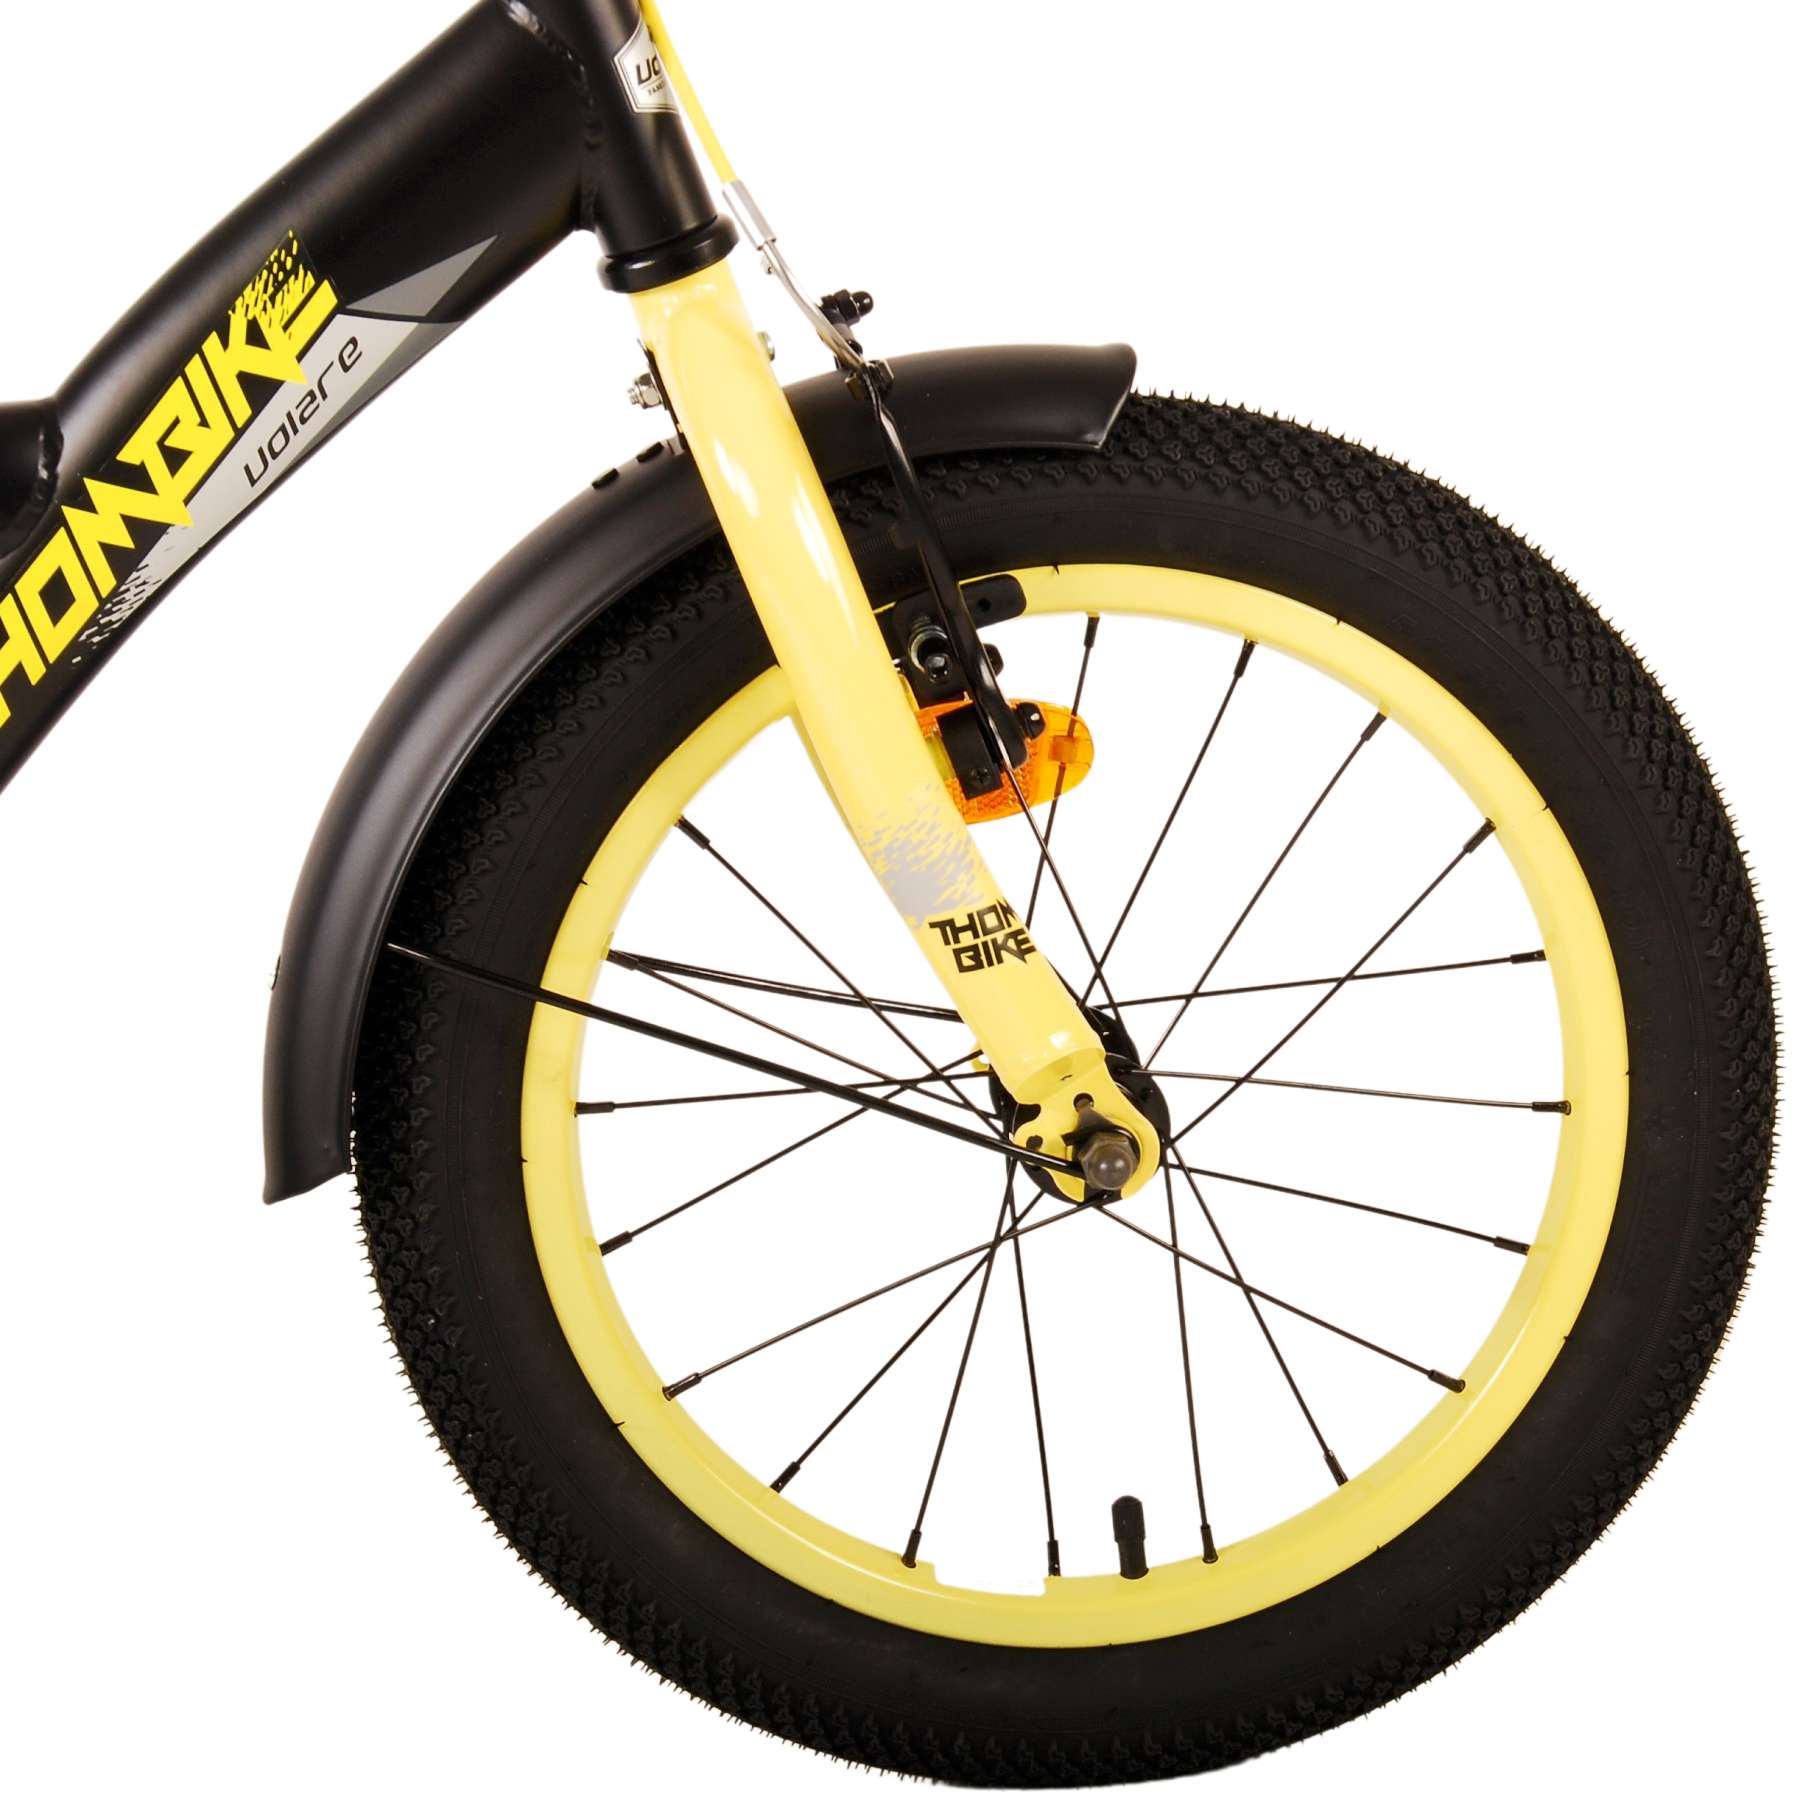 Kinderfahrrad Thombike für Jungen 16 Zoll Kinderrad in Schwarz Gelb